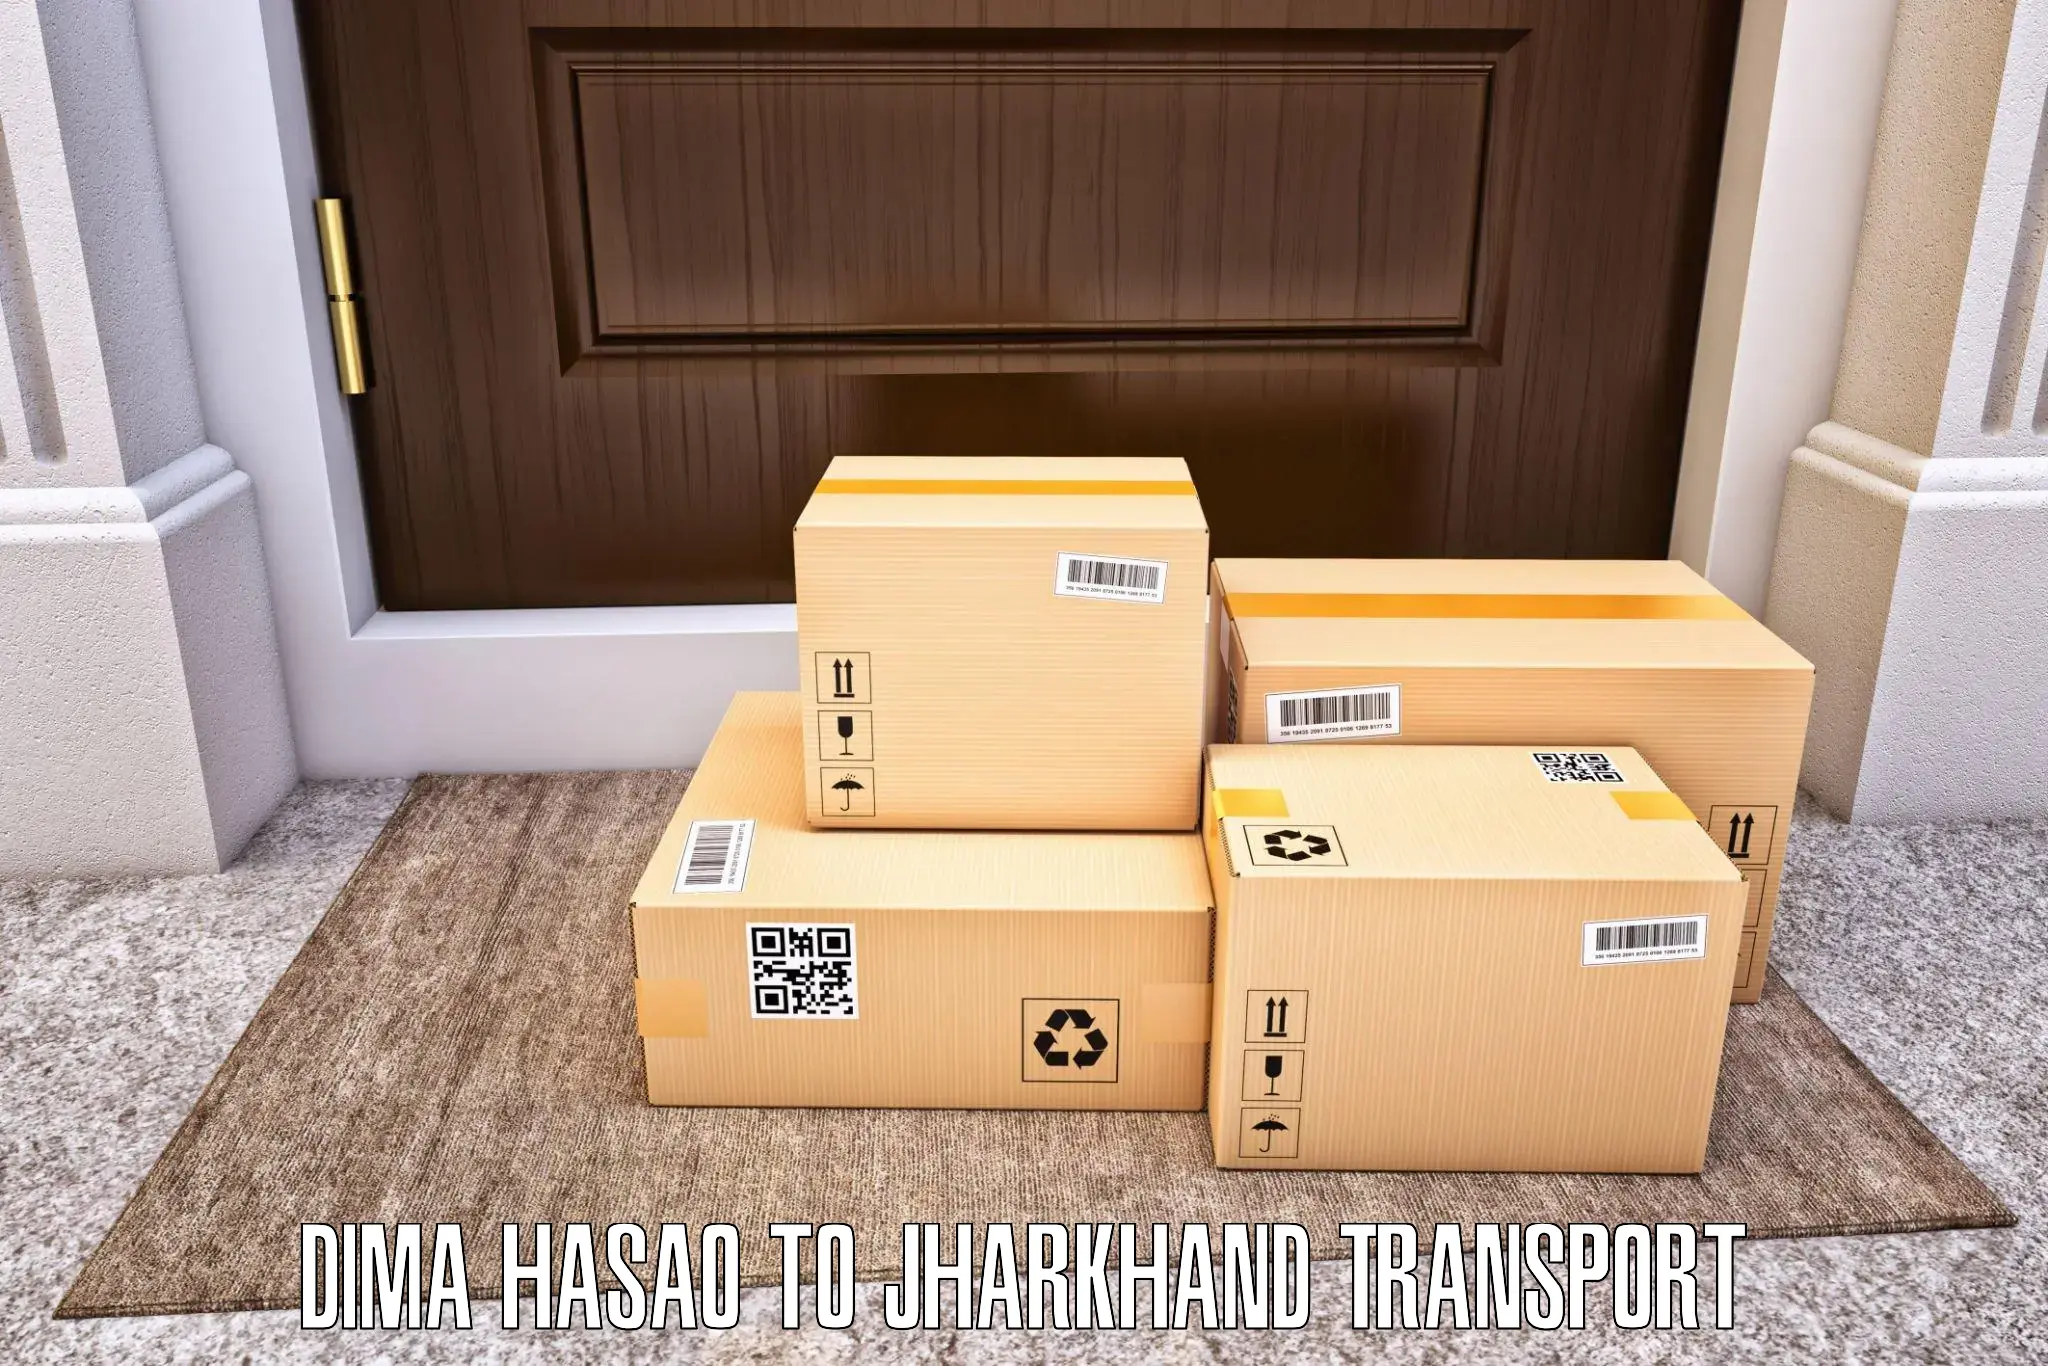 Shipping partner Dima Hasao to Bundu